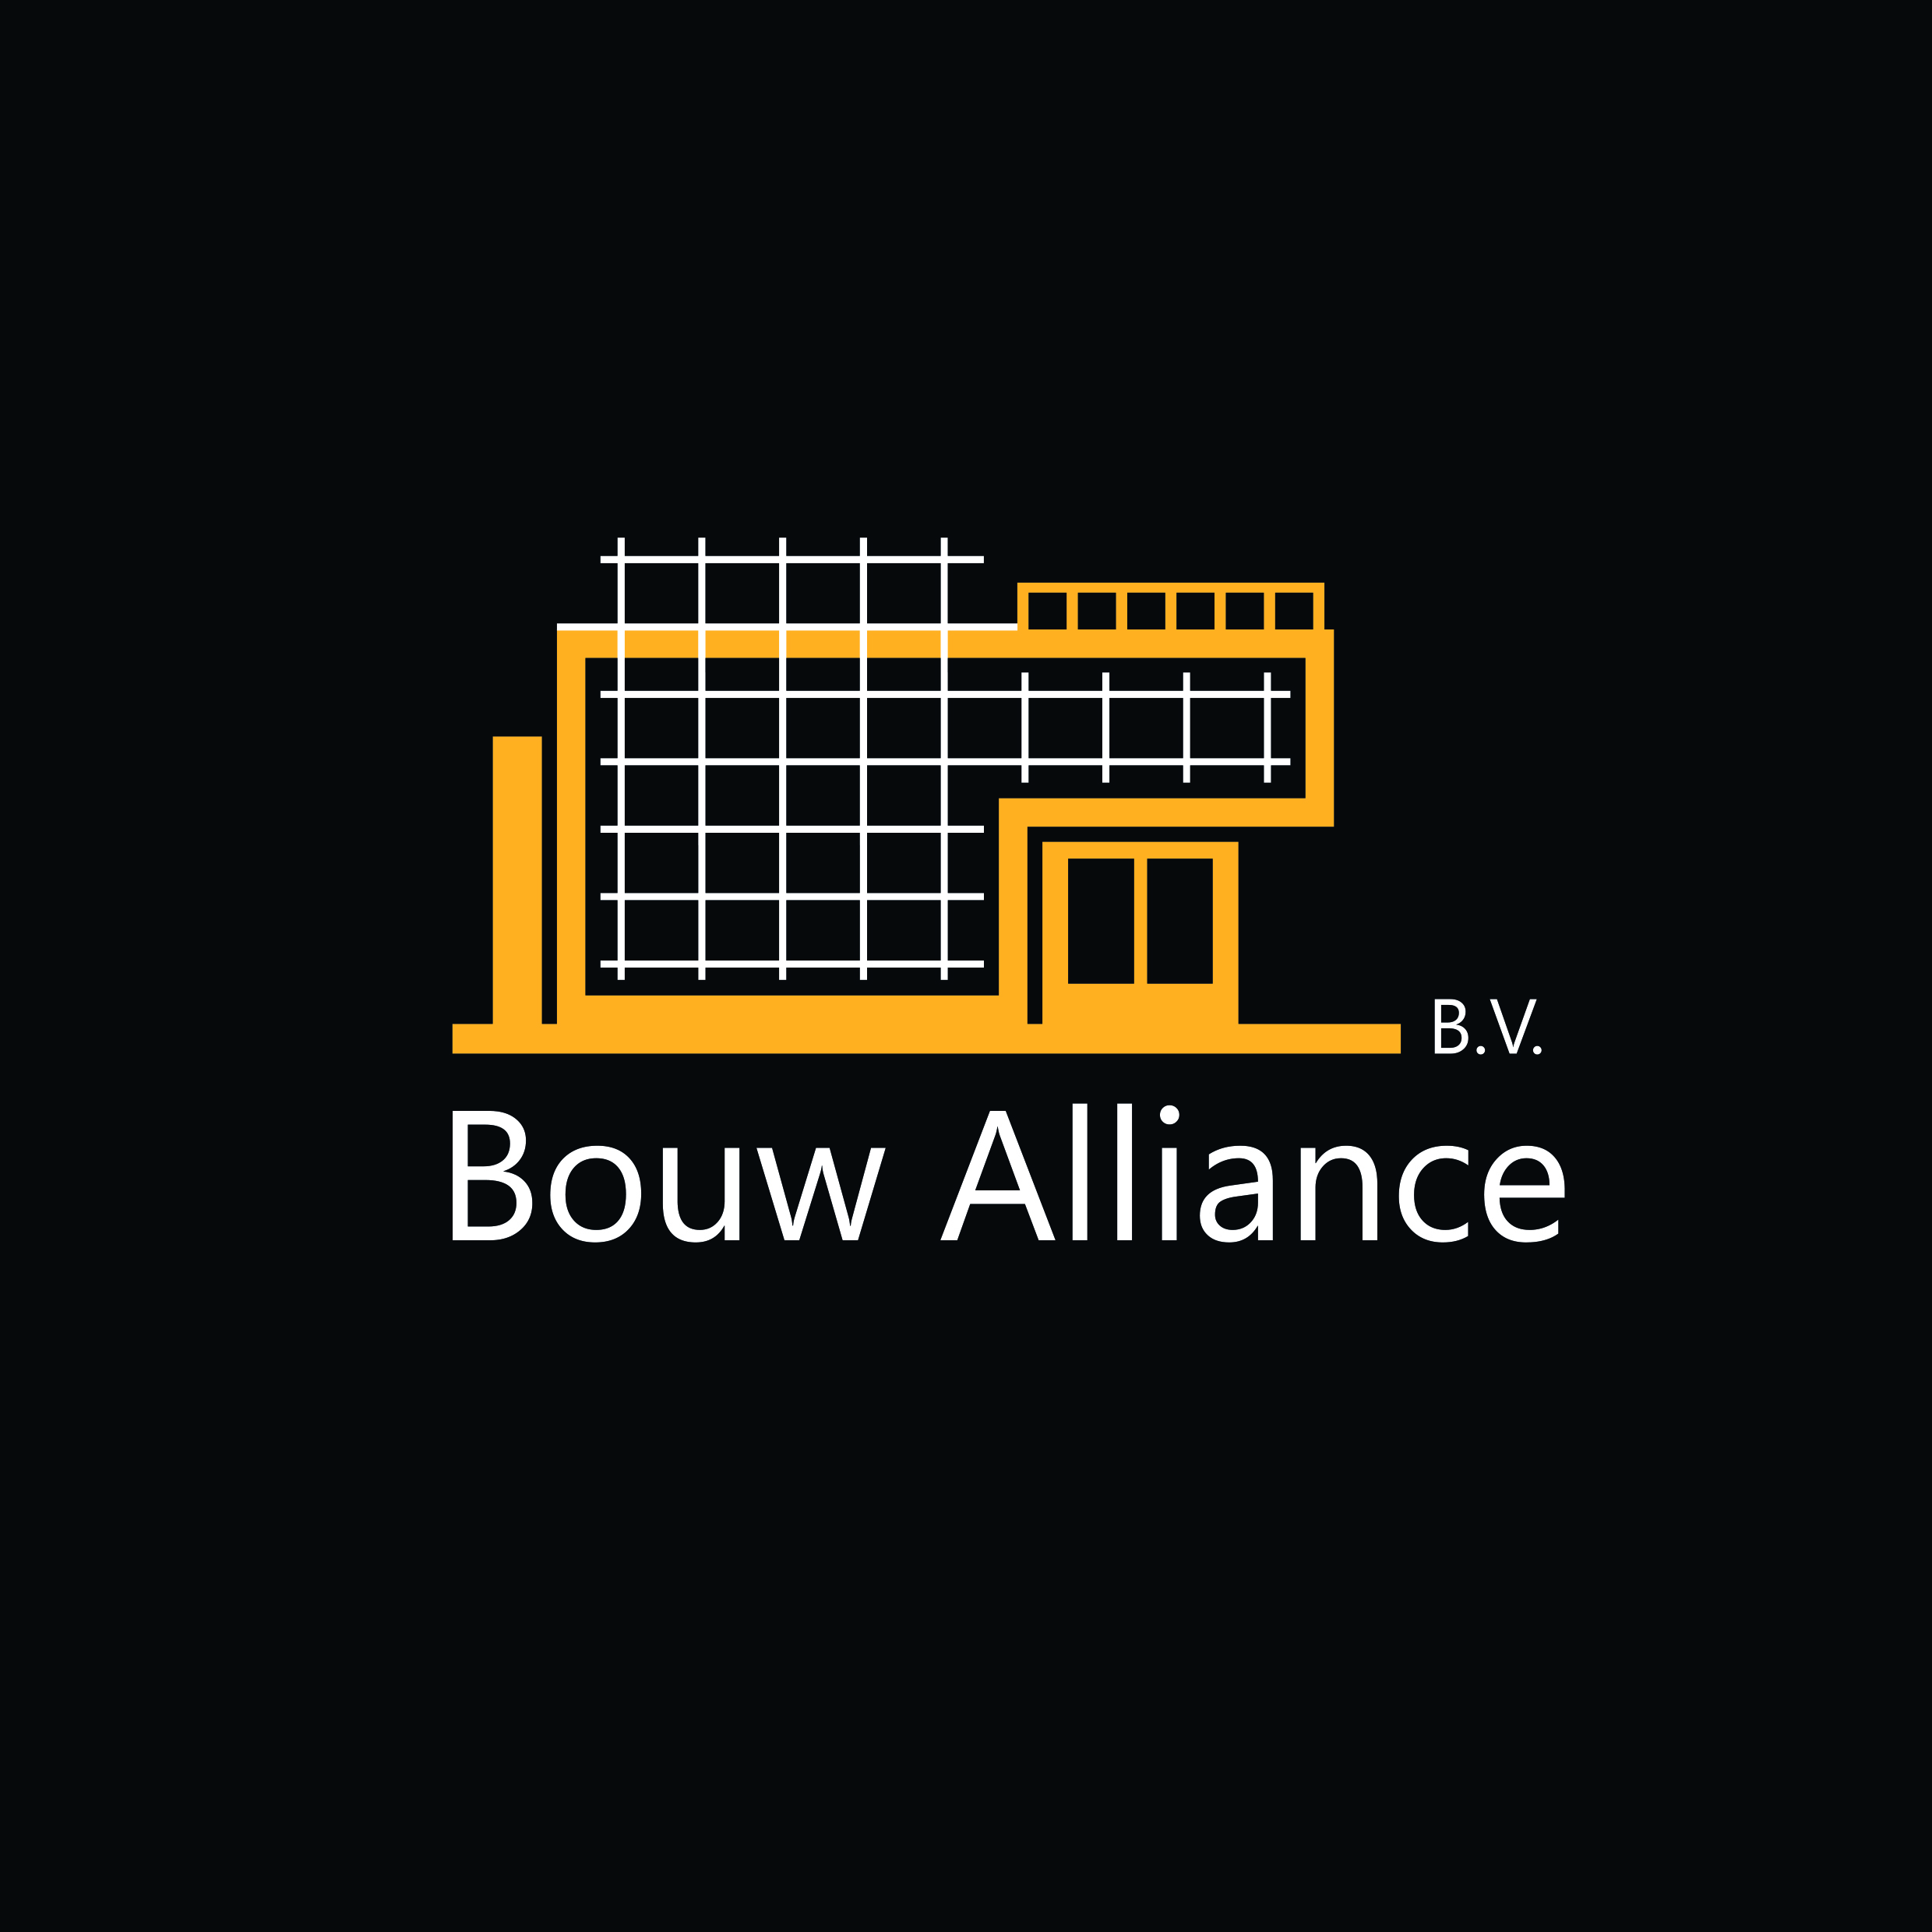 Bouw Alliance B.V.